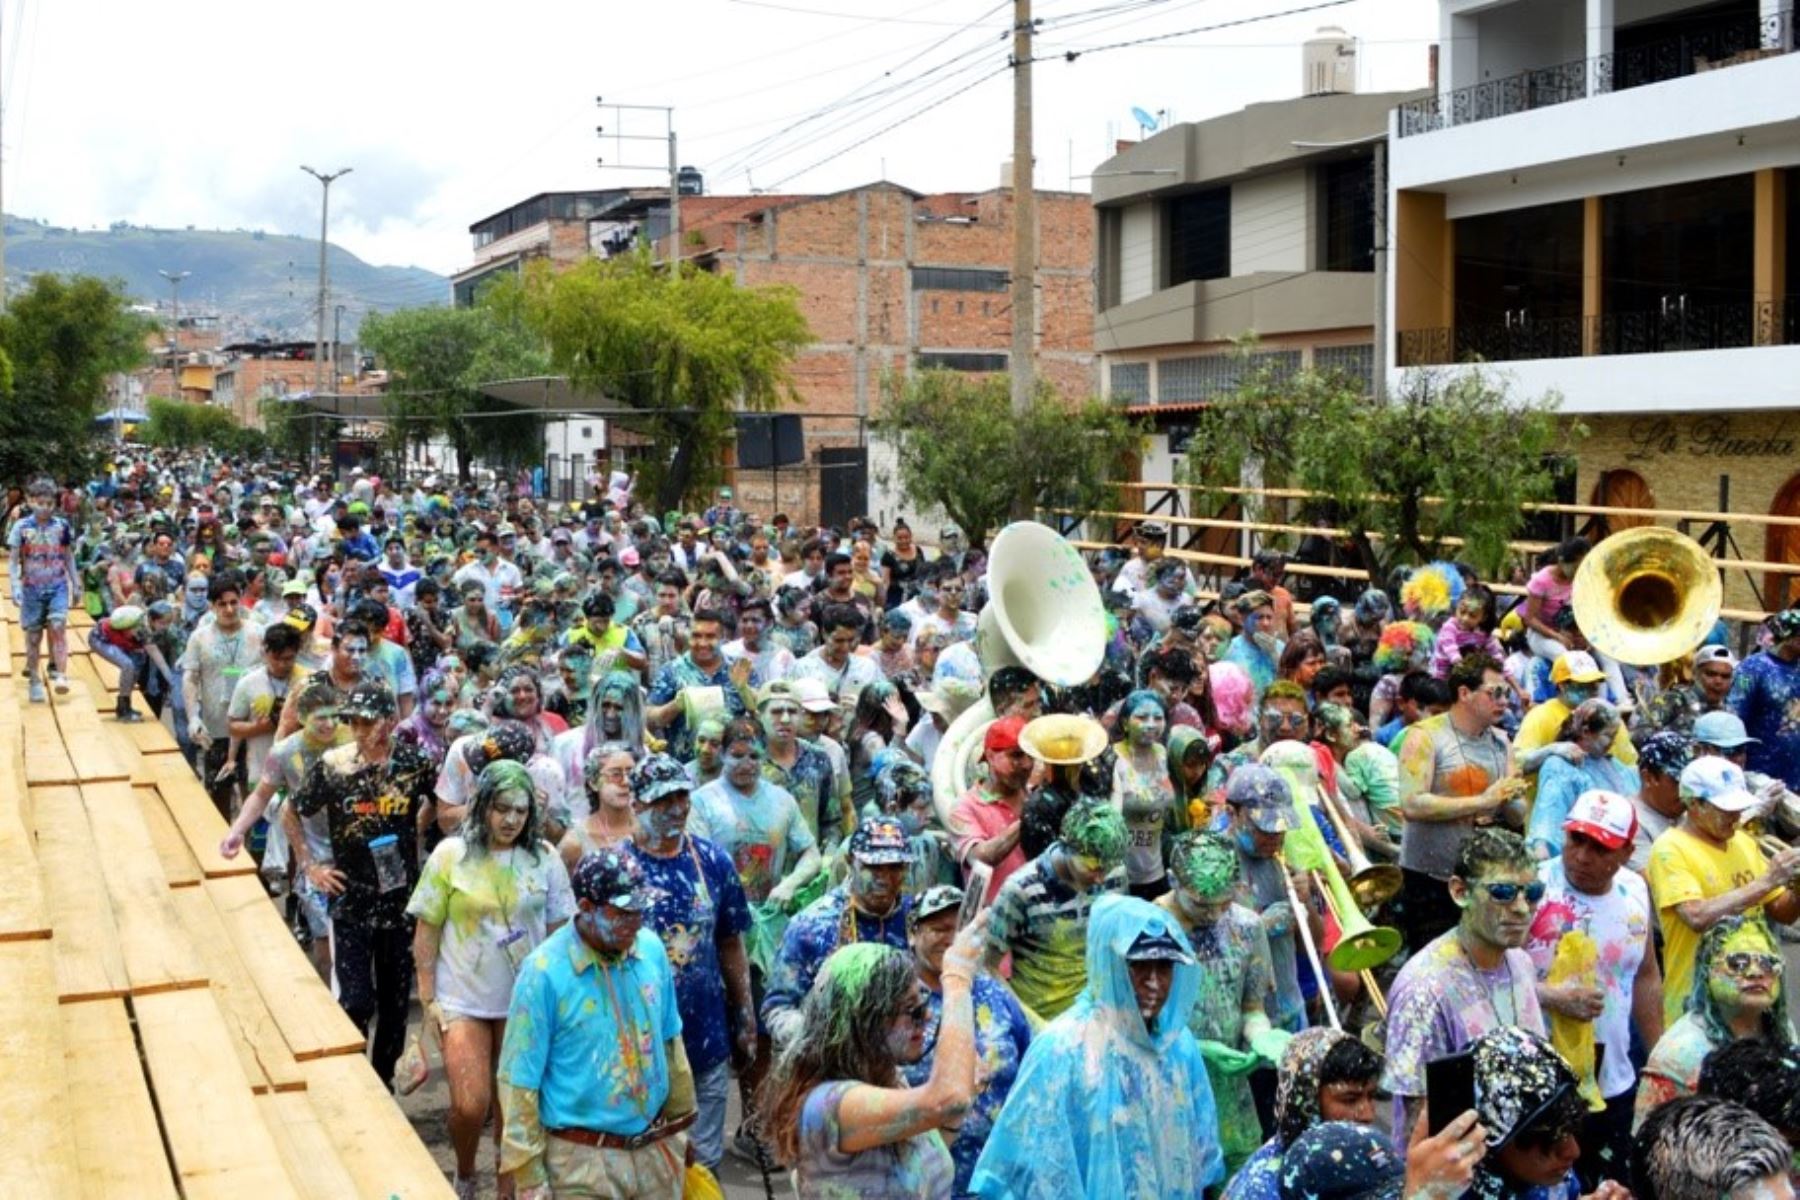 Se restringirá el acceso al centro histórico de Cajamarca durante los días festivos, con la finalidad de evitar daños al patrimonio histórico y cultural. Foto: ANDINA/Difusión